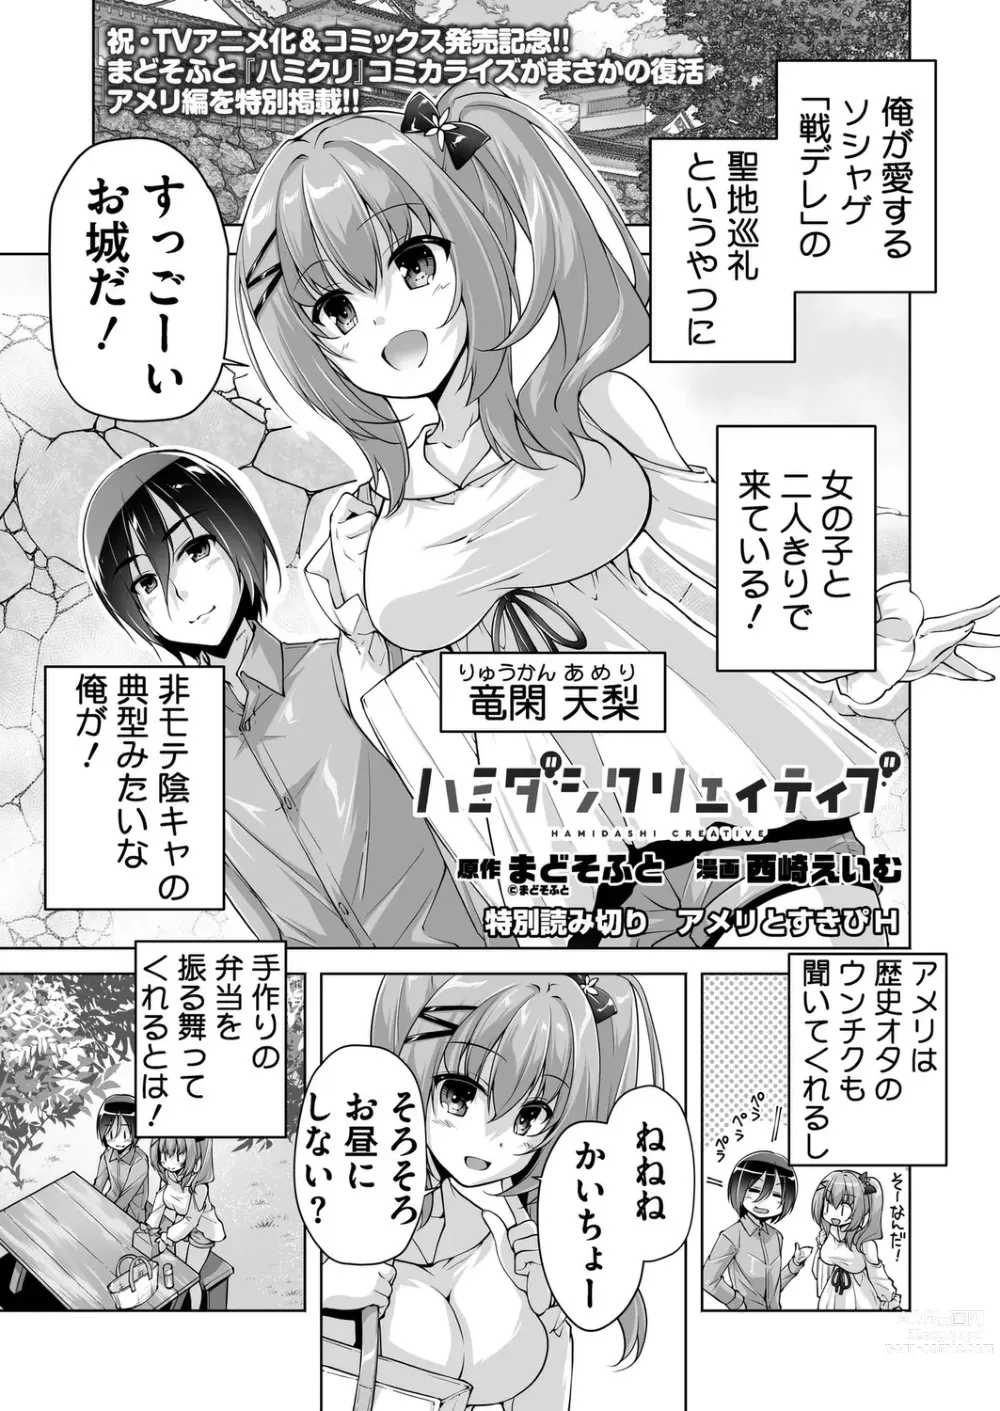 Page 1 of manga Hamidashi Creative Tokubetsu yomikiri ameri to sukipi H